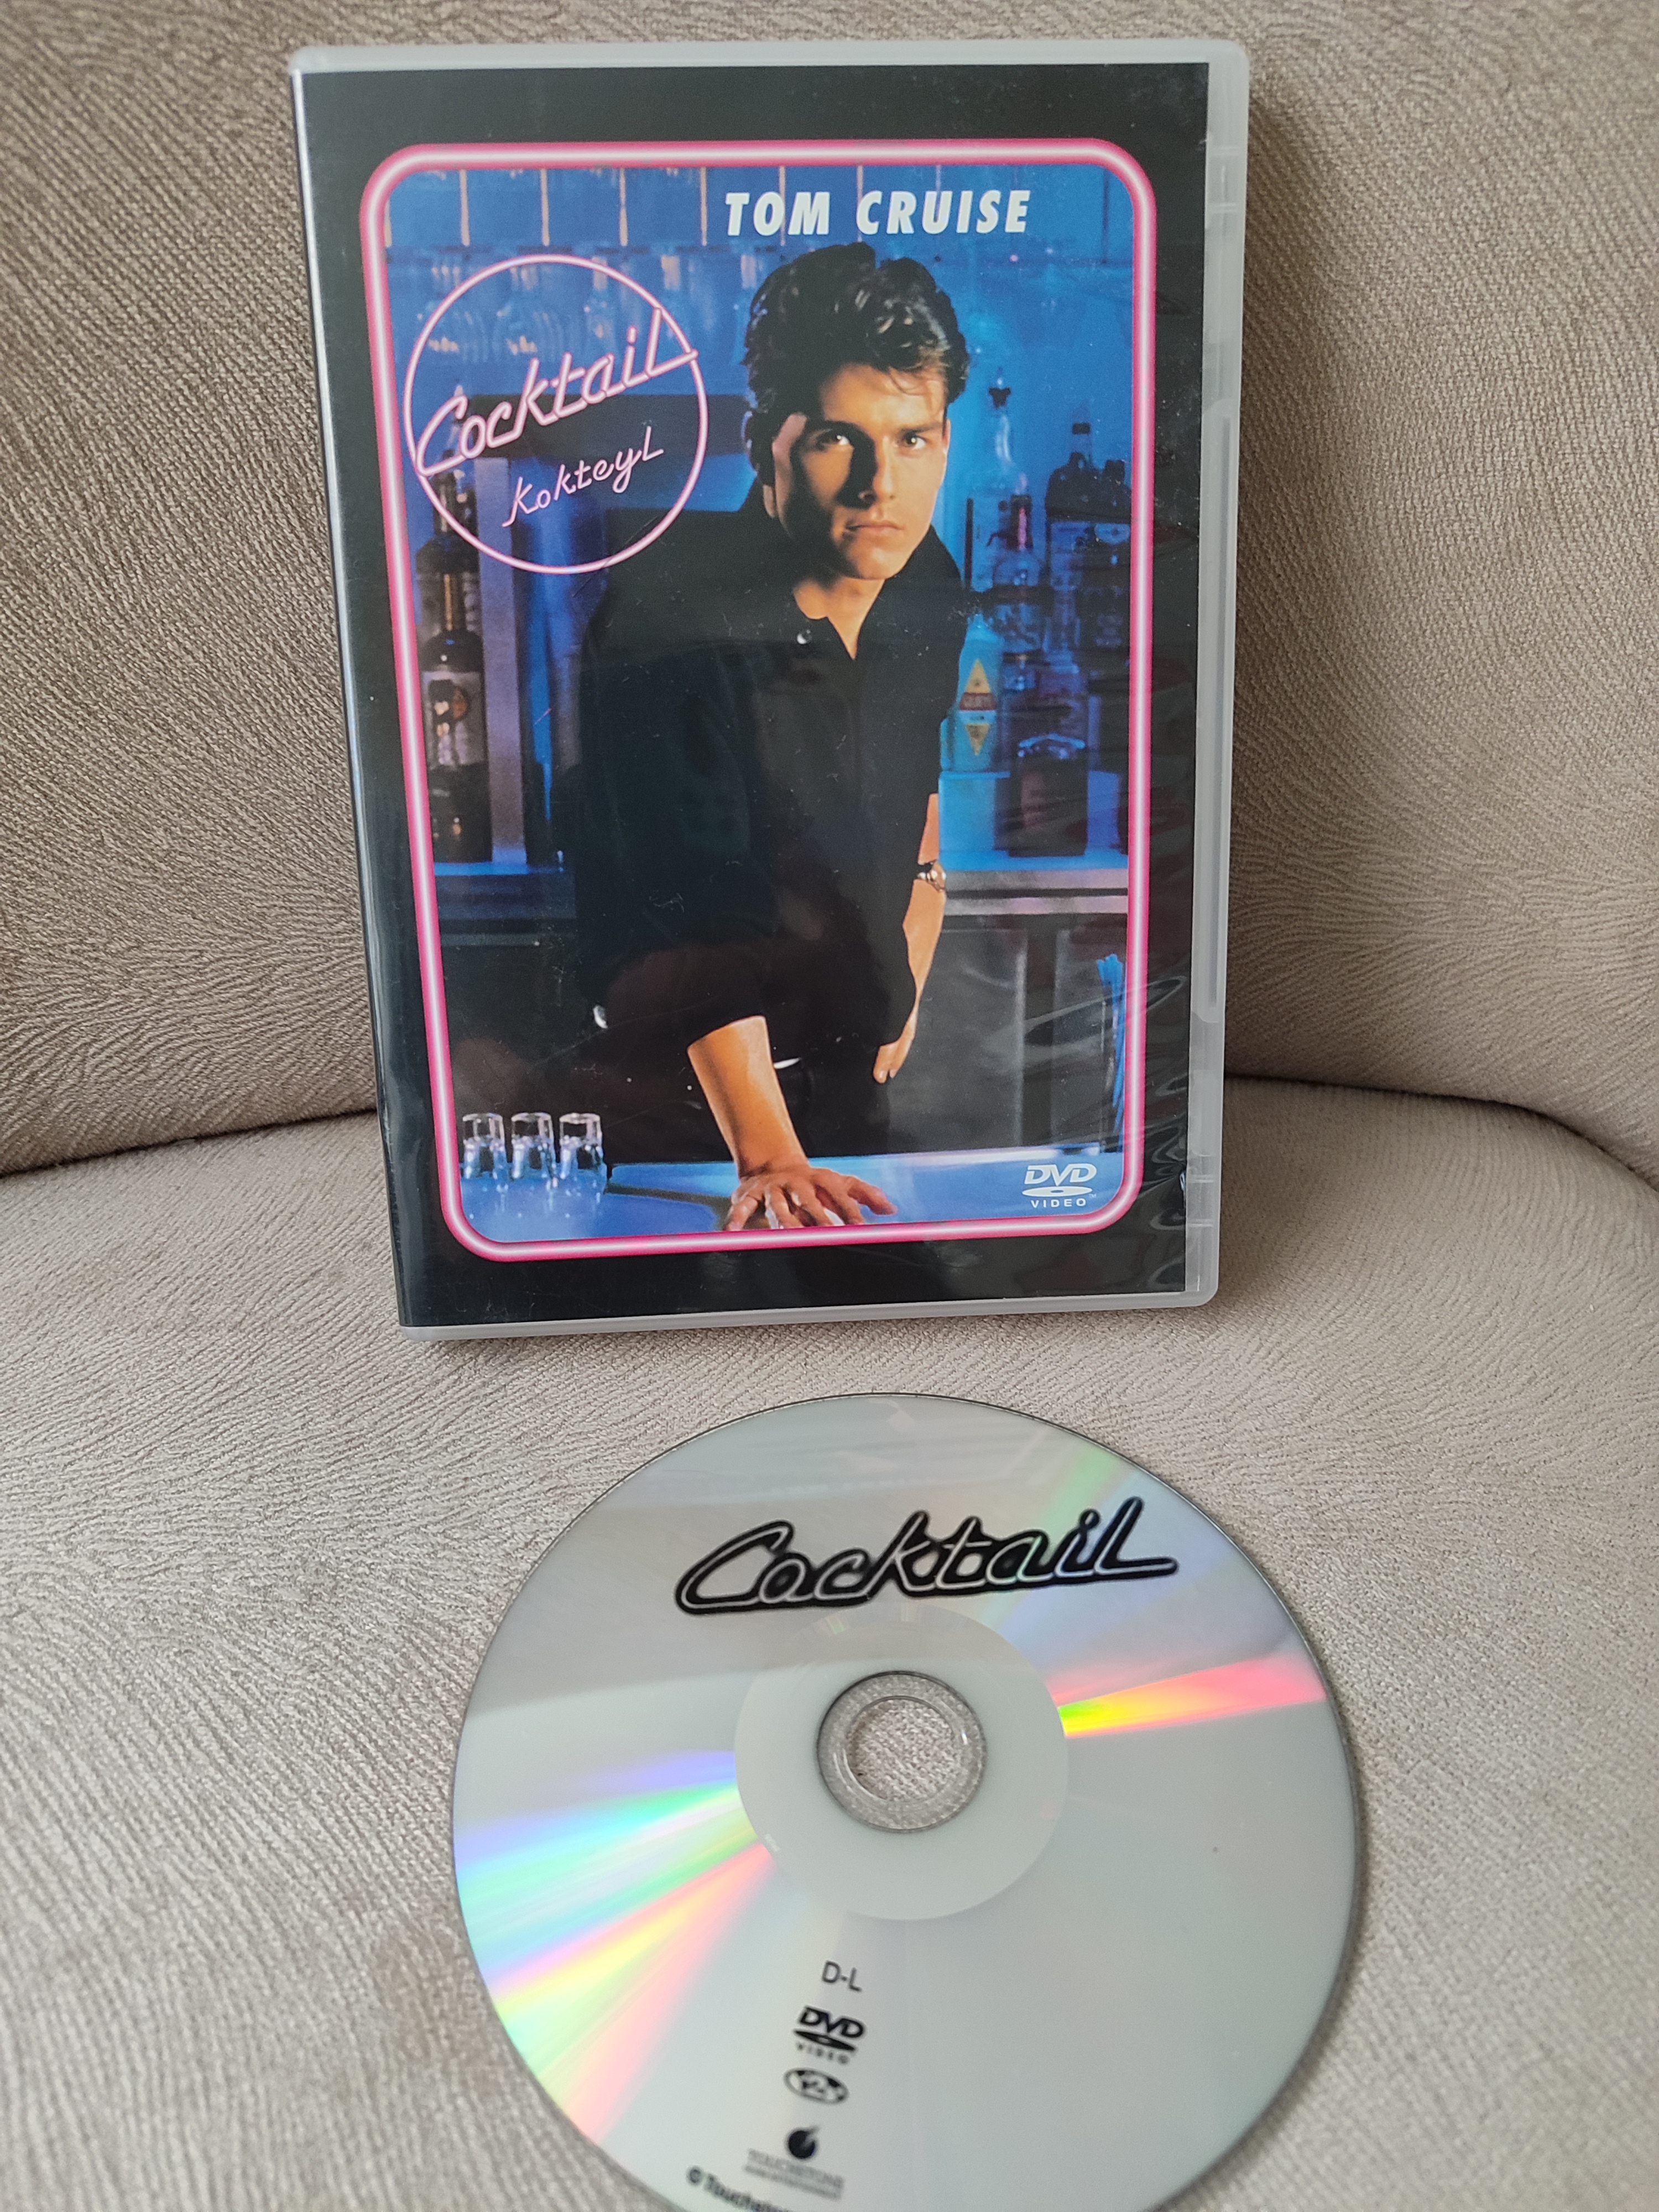 KOKTEYL / COCKTAIL - Tom Cruise  - DVD Film - 2. EL